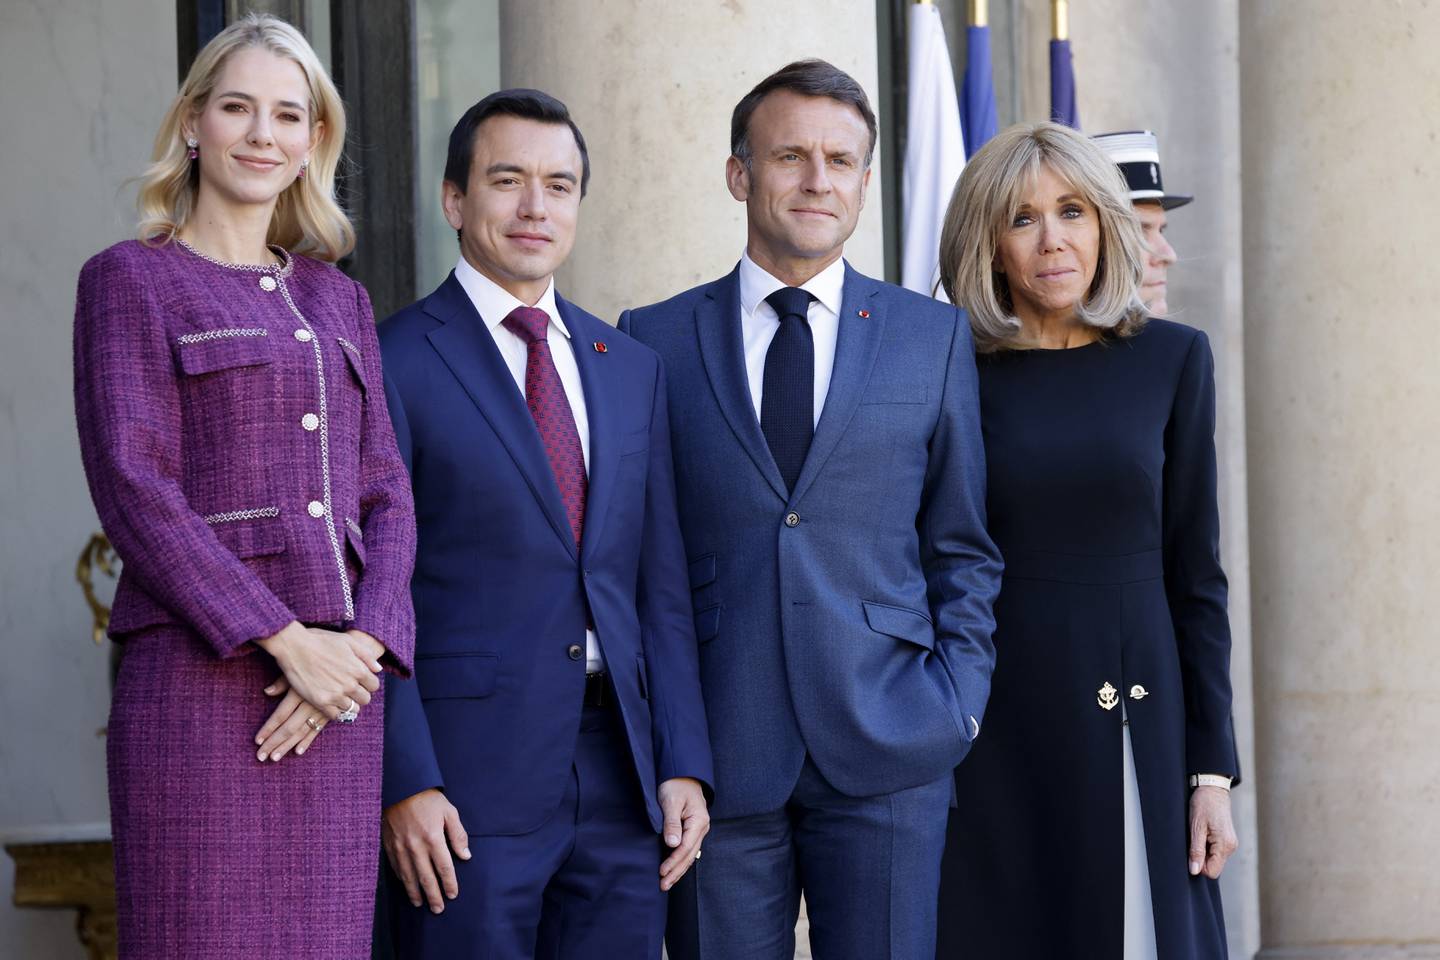 El presidente de Francia, Emmanuel Macron (2do por la derecha) y su esposa Brigitte Macron (derecha), dan la bienvenida al presidente de Ecuador, Daniel Noboa (2do por la izquierda) y a su esposa Lavinia Valbonesi (por la izquierda), durante su gira europea en el Palacio presidencial del Elíseo en París.